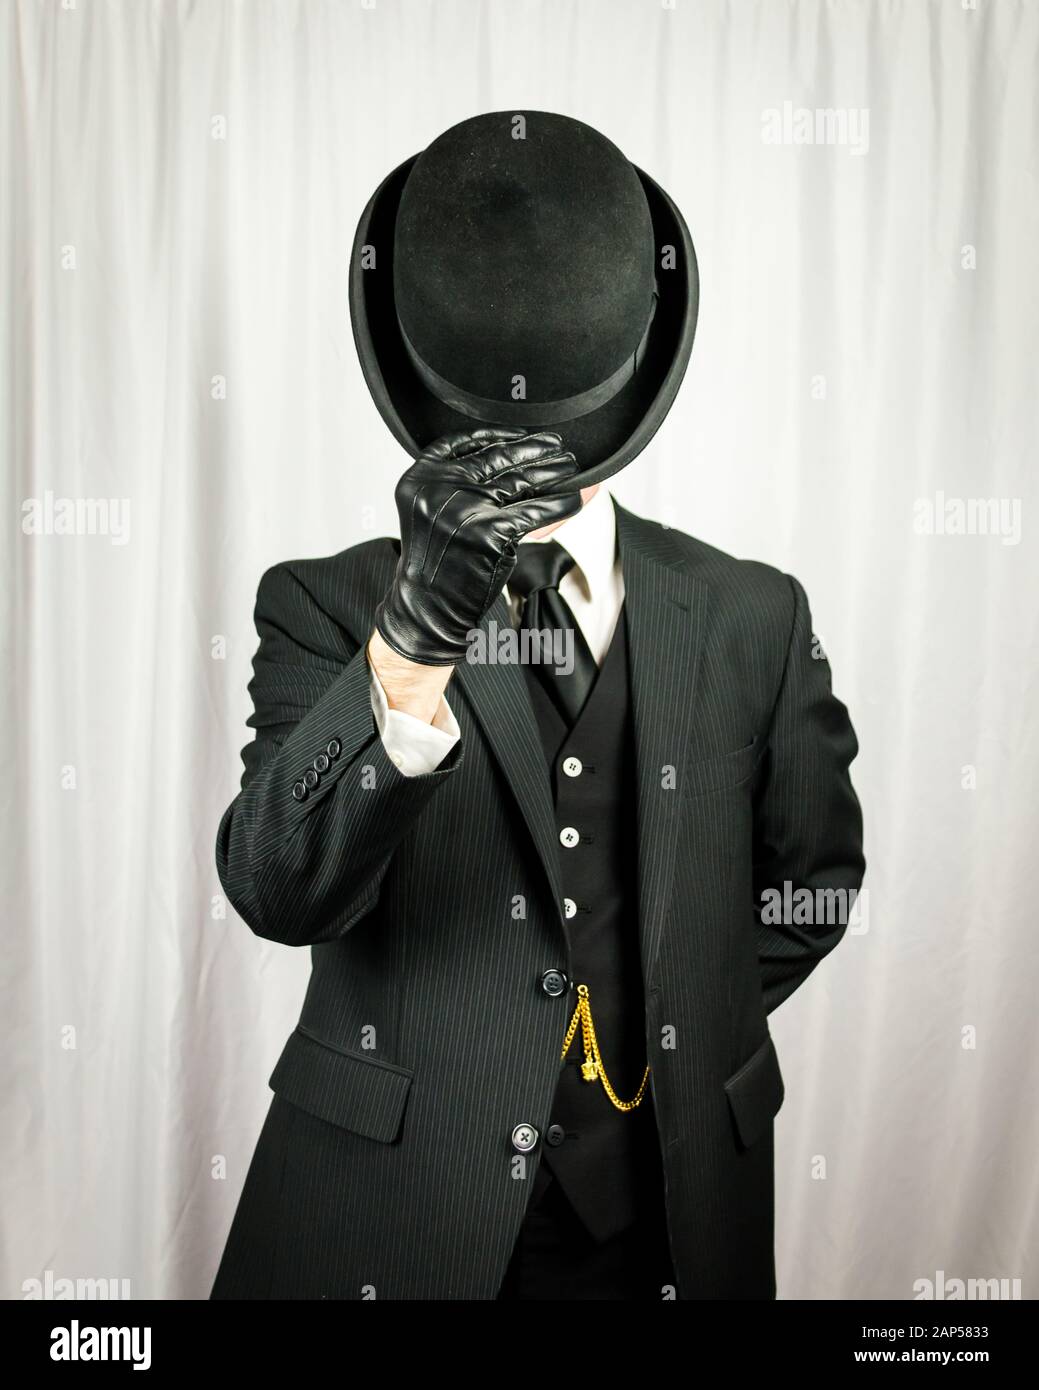 Porträt des erfolgreichen Mann in dunklen Anzug und Lederhandschuhe Doffing Bowler Hut. Konzept des klassischen und exzentrischen britischen Gentleman. Retro-Mode. Stockfoto